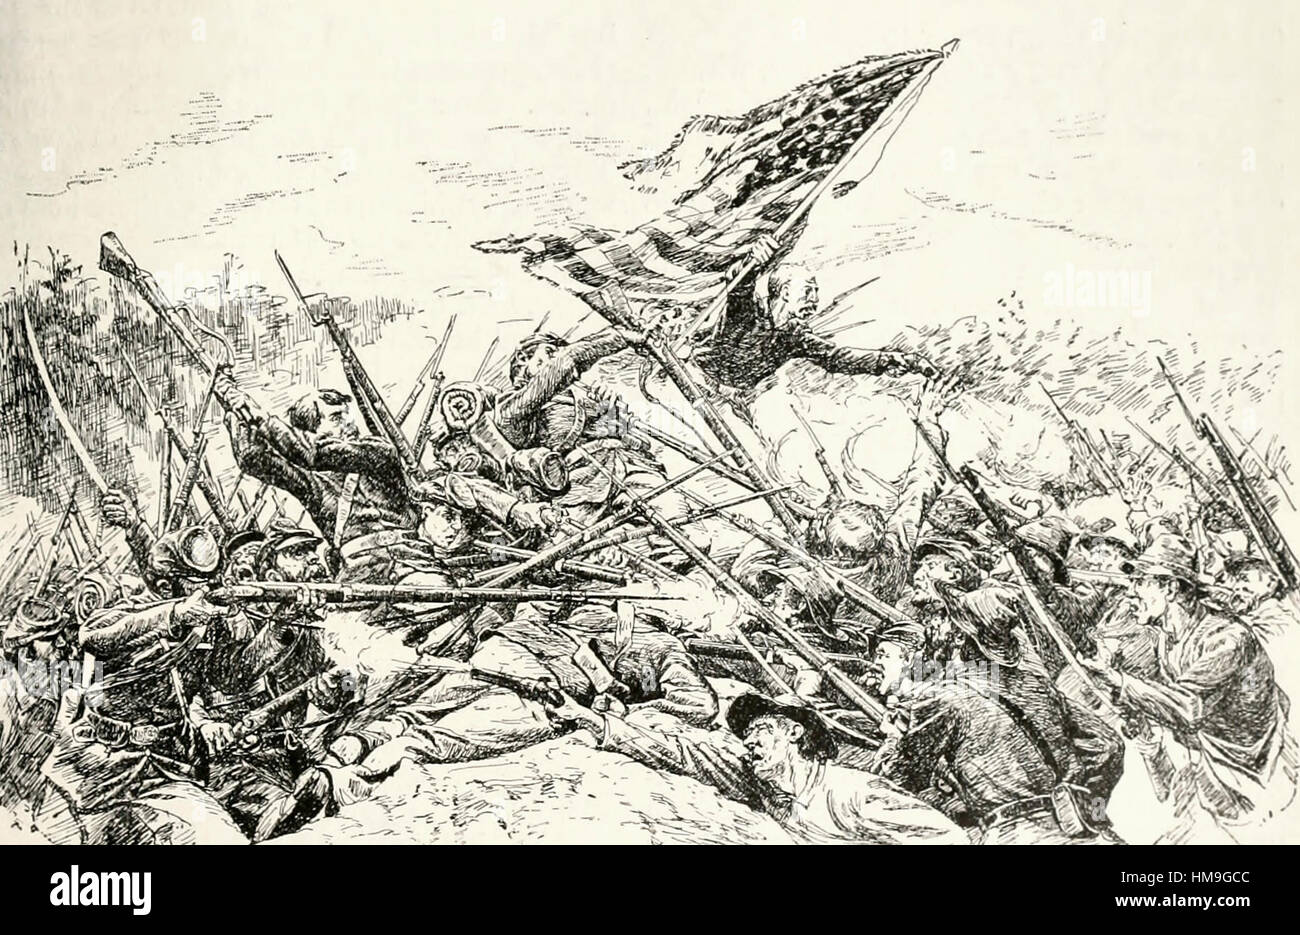 Hancock's corps assaltando la lavora ad angolo sanguinante nella battaglia di Spotsylvania Court House durante gli Stati Uniti dalla guerra civile Foto Stock